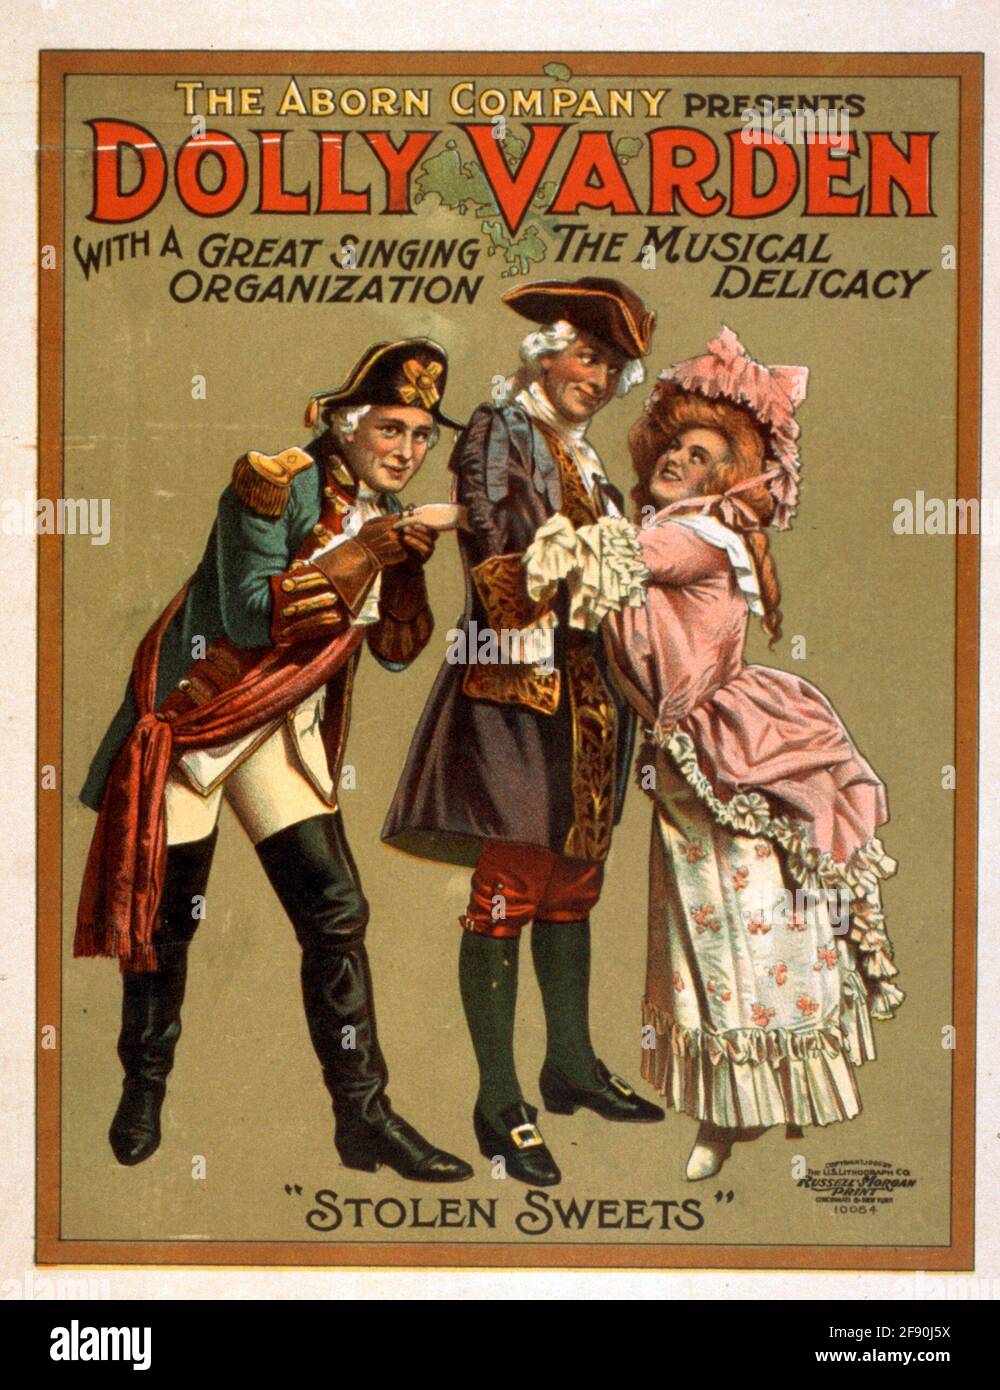 La Compagnia Arborn presenta a Dolly Varden la delicatezza musicale con una grande organizzazione di canto, circa 1906 Foto Stock